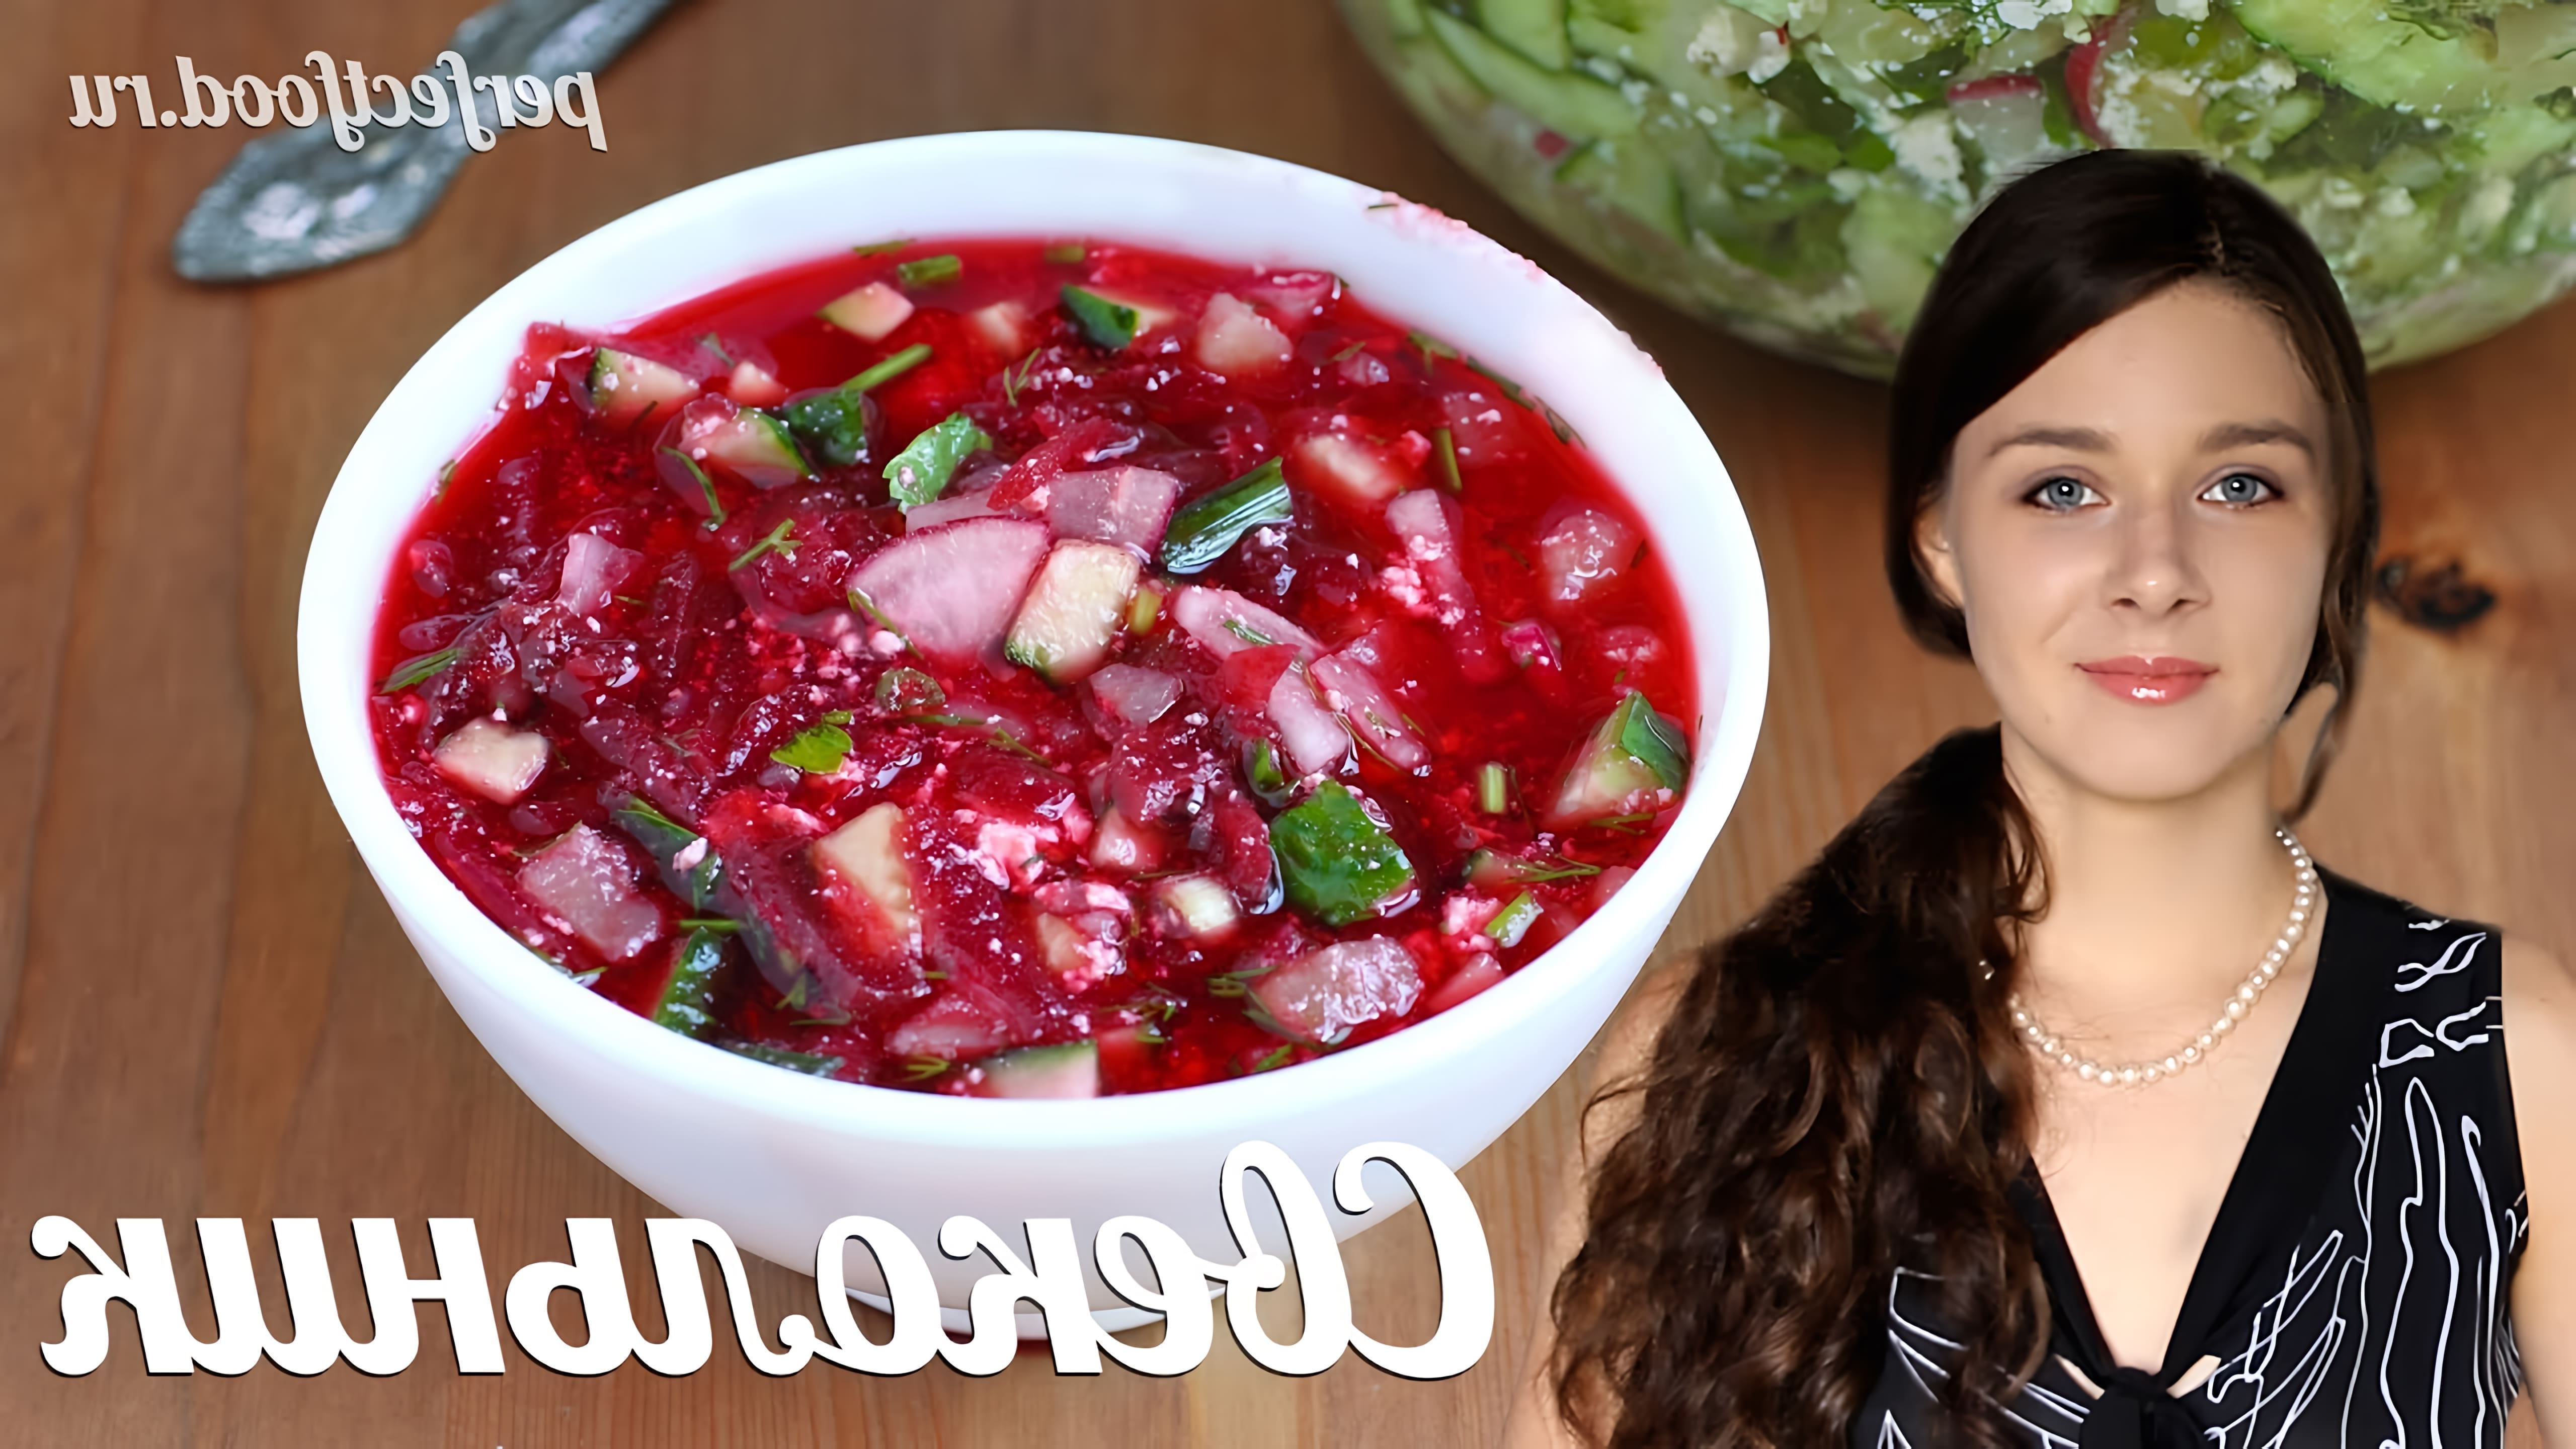 В этом видео Елена показывает, как приготовить веганский свекольник - легкий и освежающий летний суп